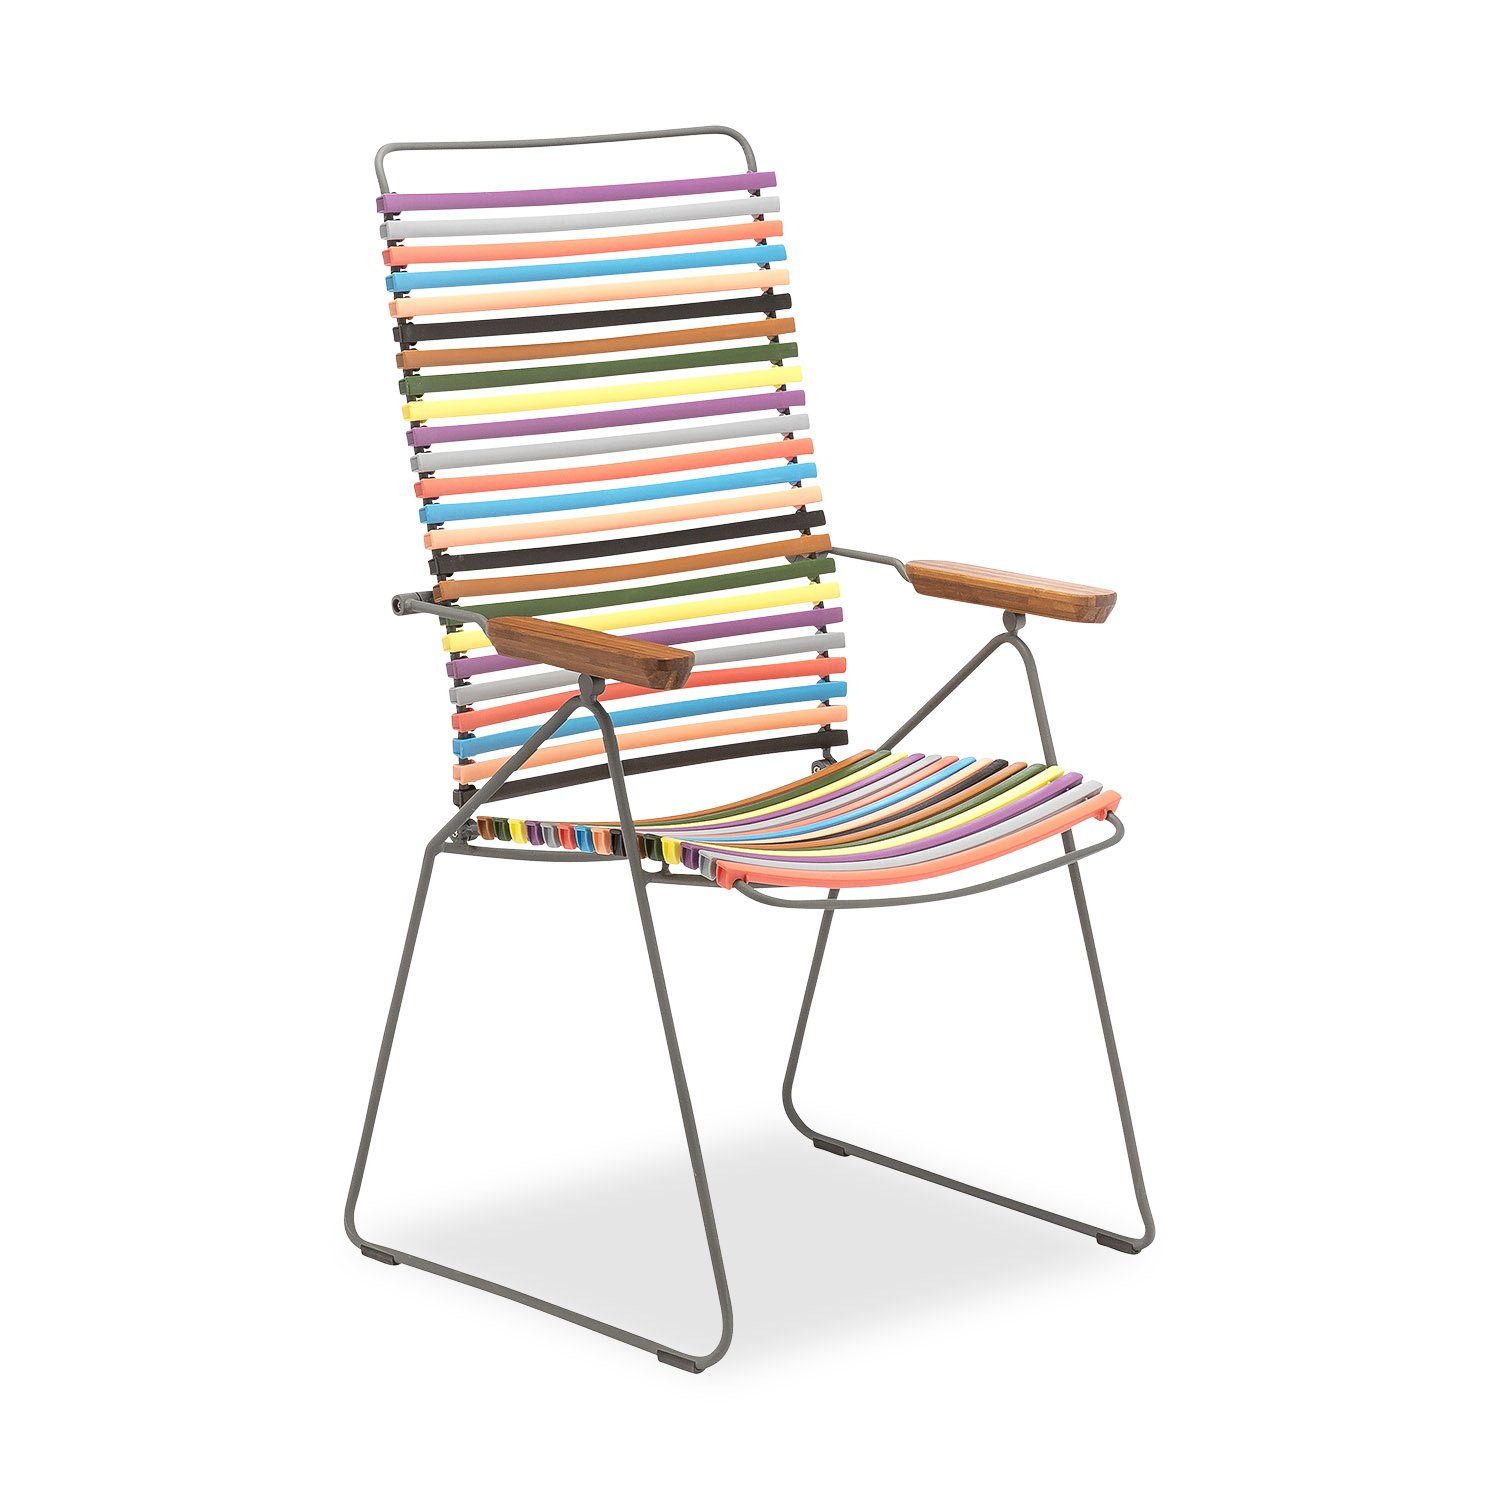 Click positionsstol från Houe i multifärgat.